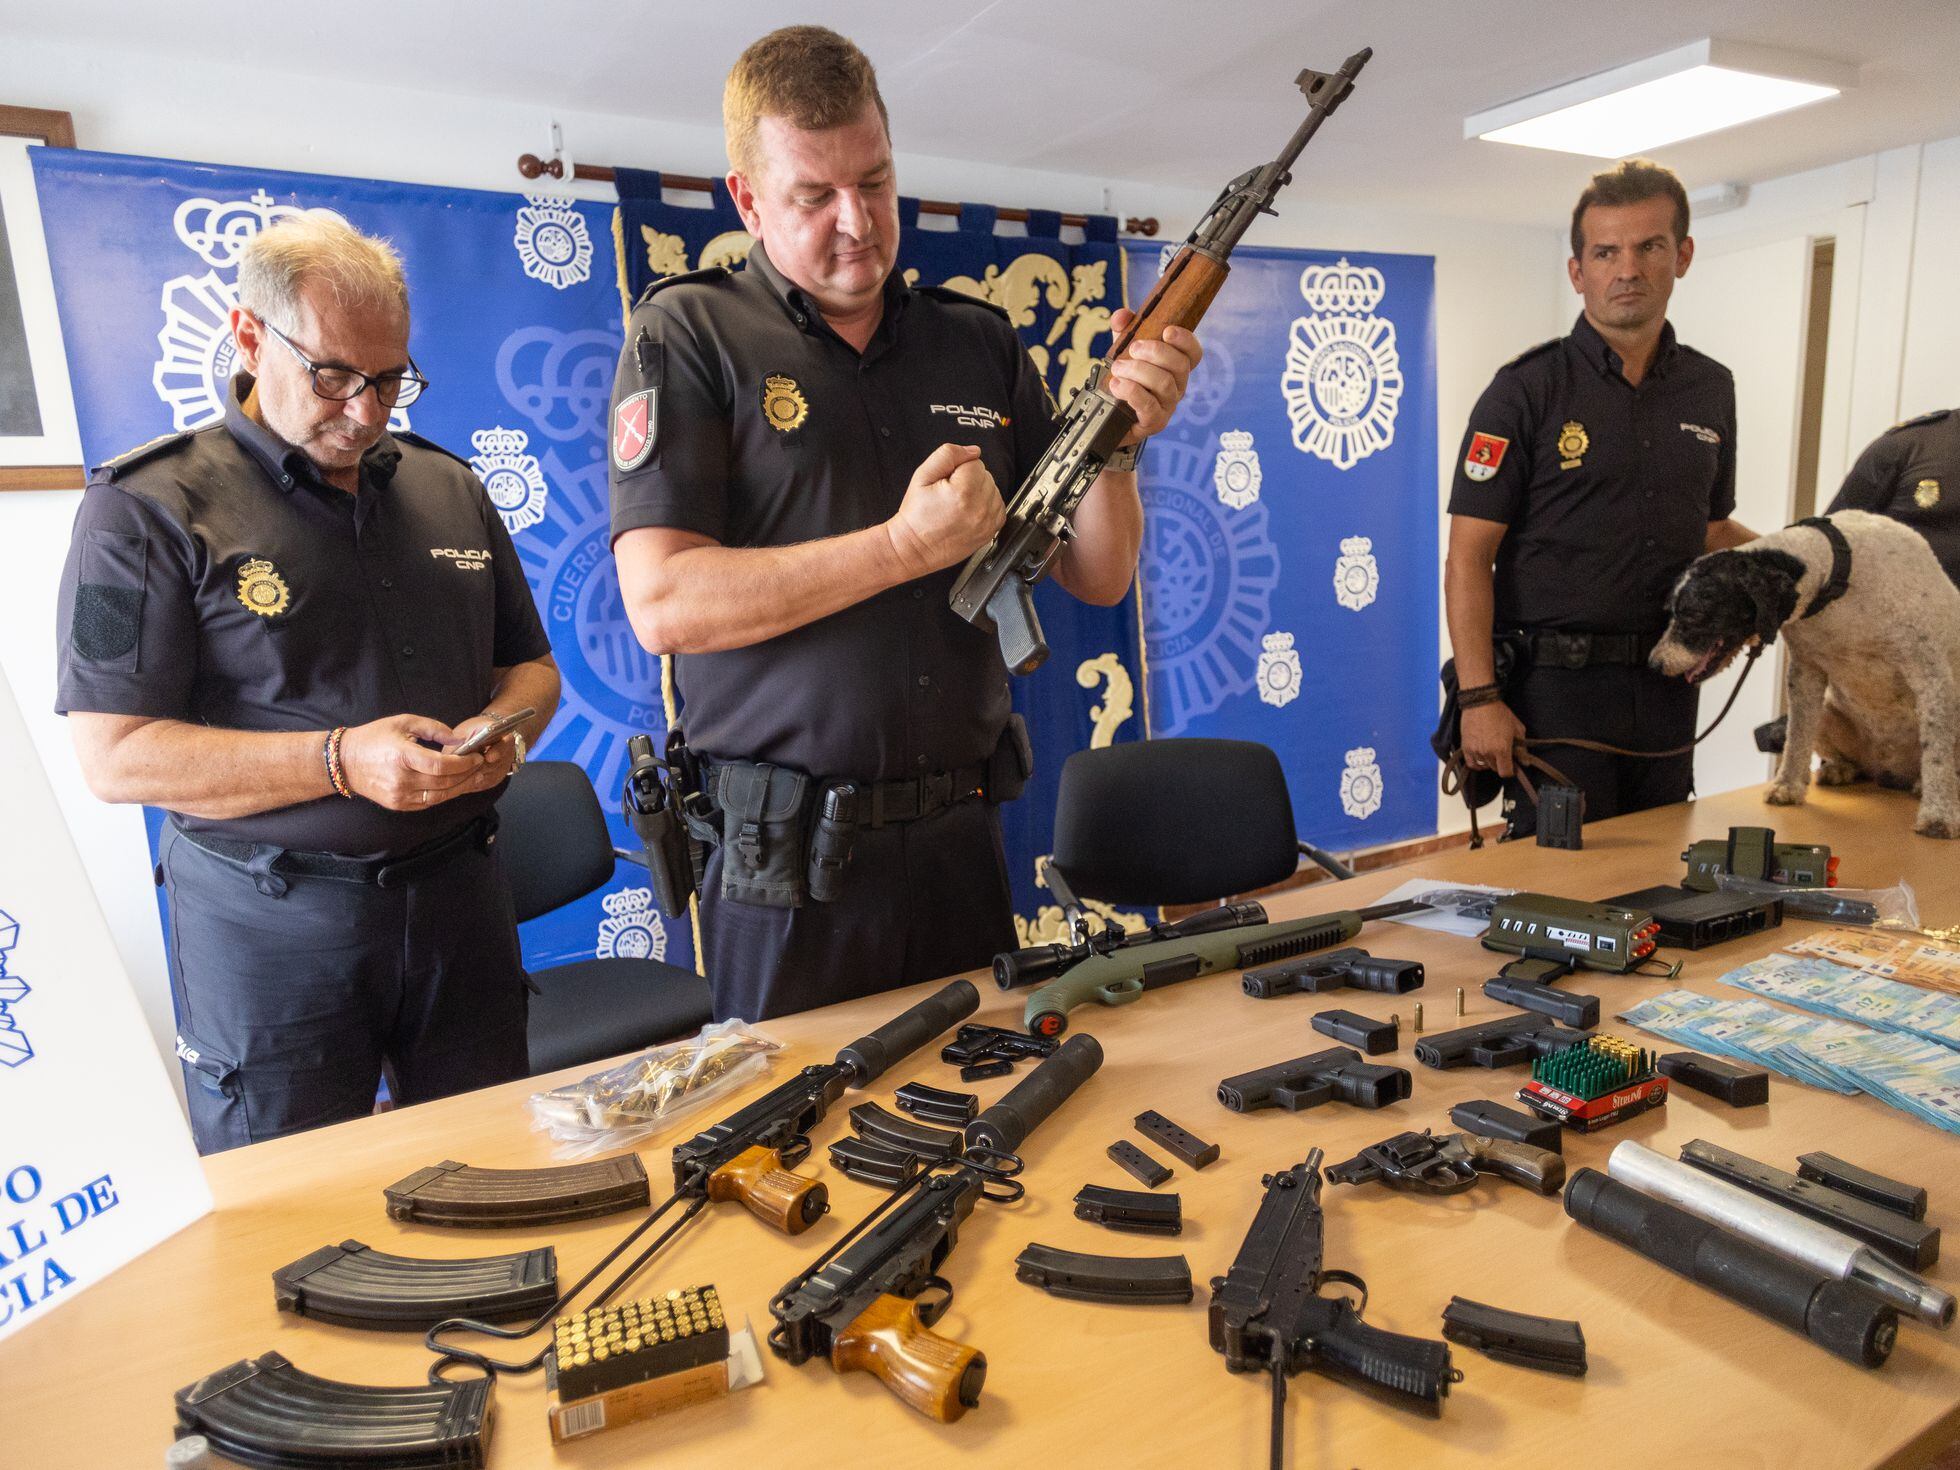 Polícia do Rio apreende arsenal com traficante de armas que tem certificado  de colecionador, Jornal Nacional